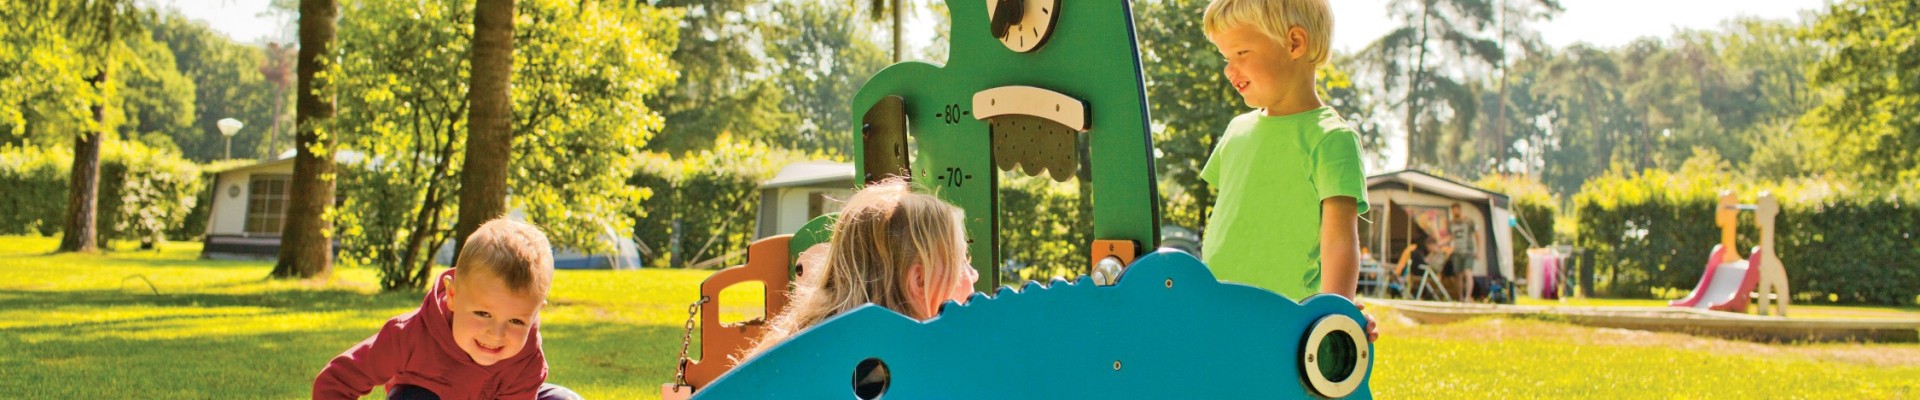 Kampeerveld Fazant - Kids speeltuin (custom).jpg